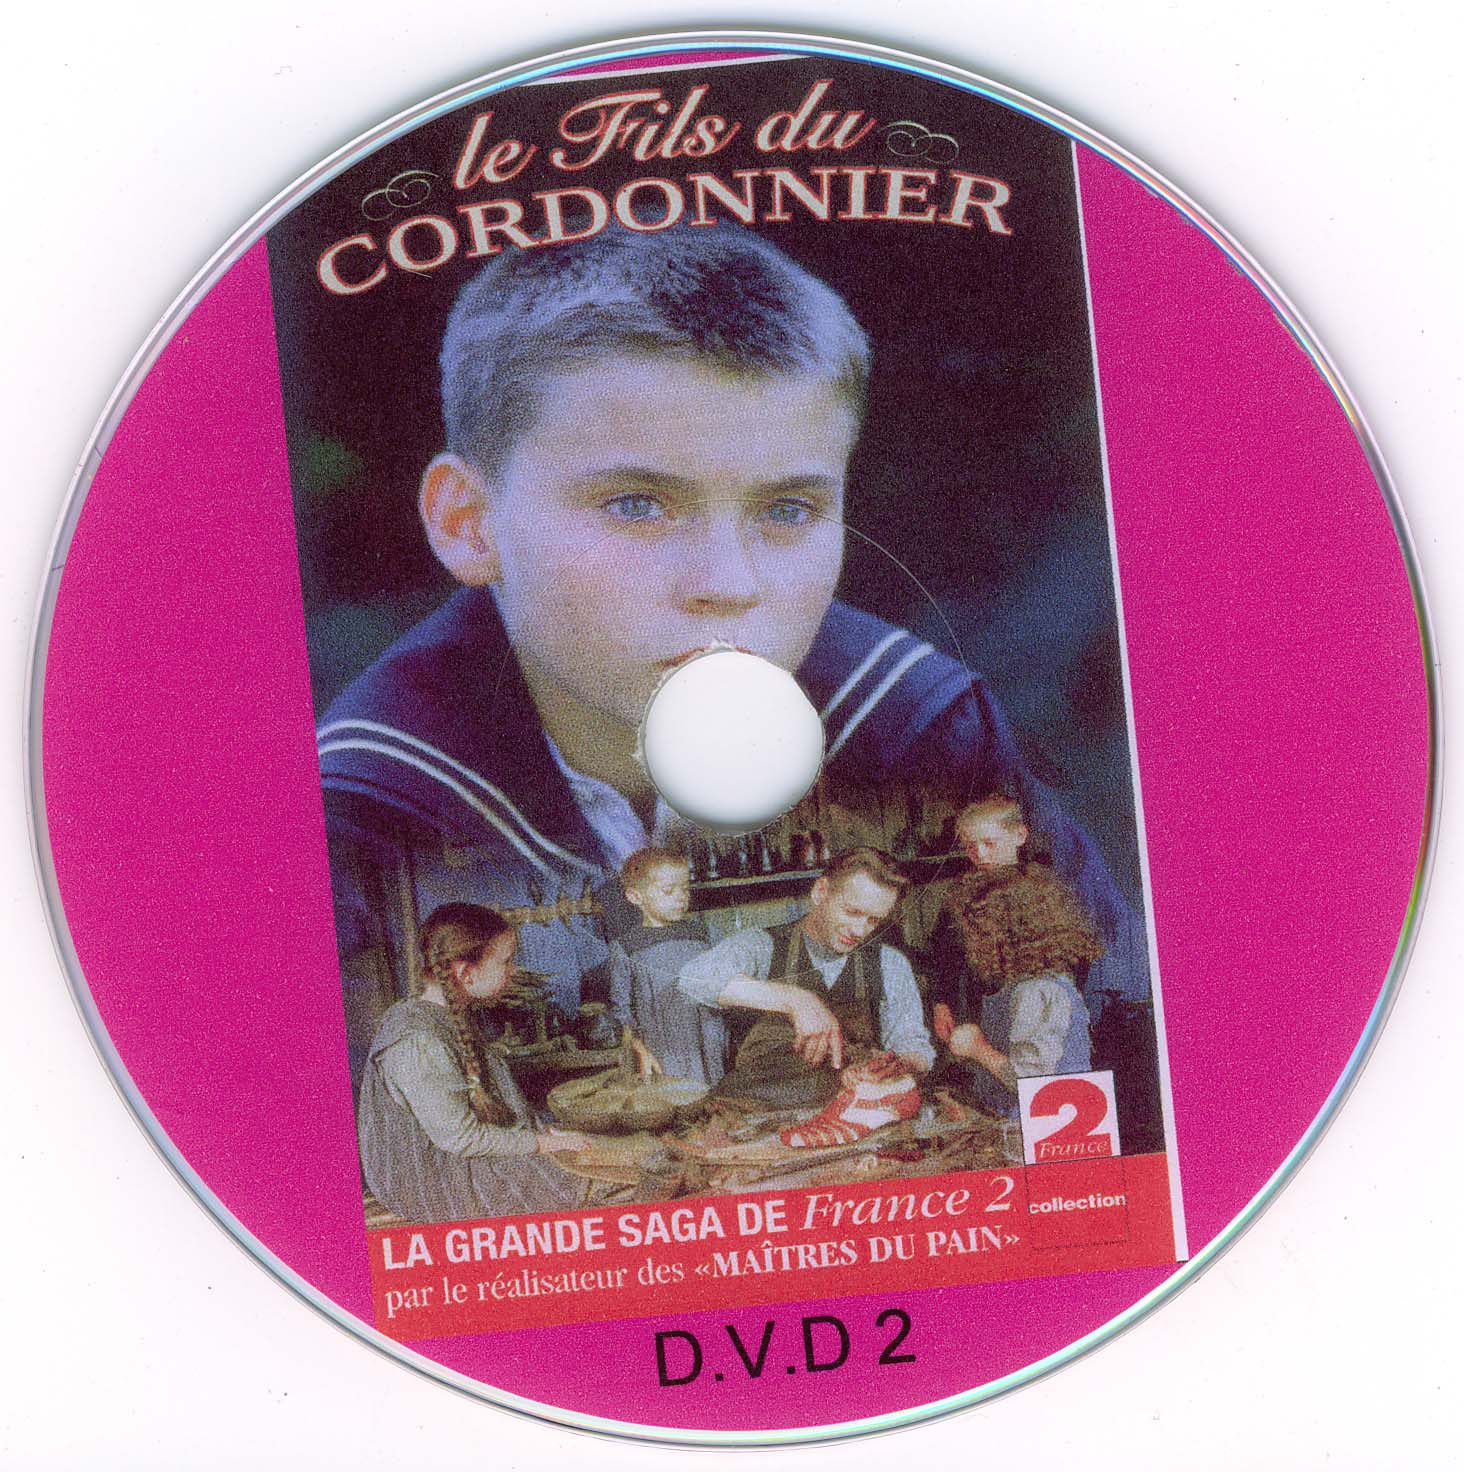 Le fils du Cordonnier (disc 2)